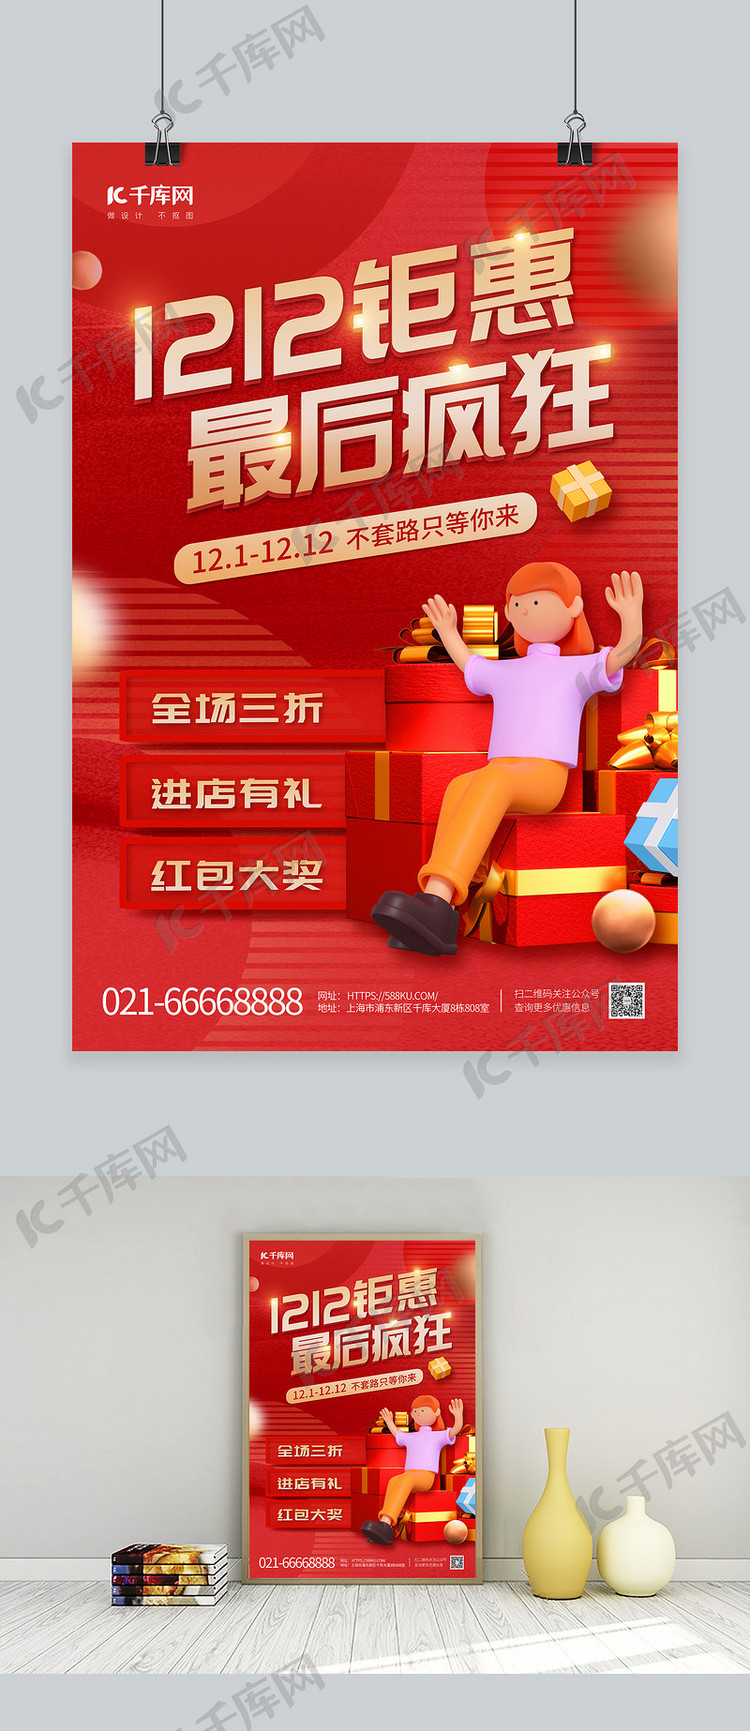 1212双十二钜惠3D人物礼盒红色创意促销海报